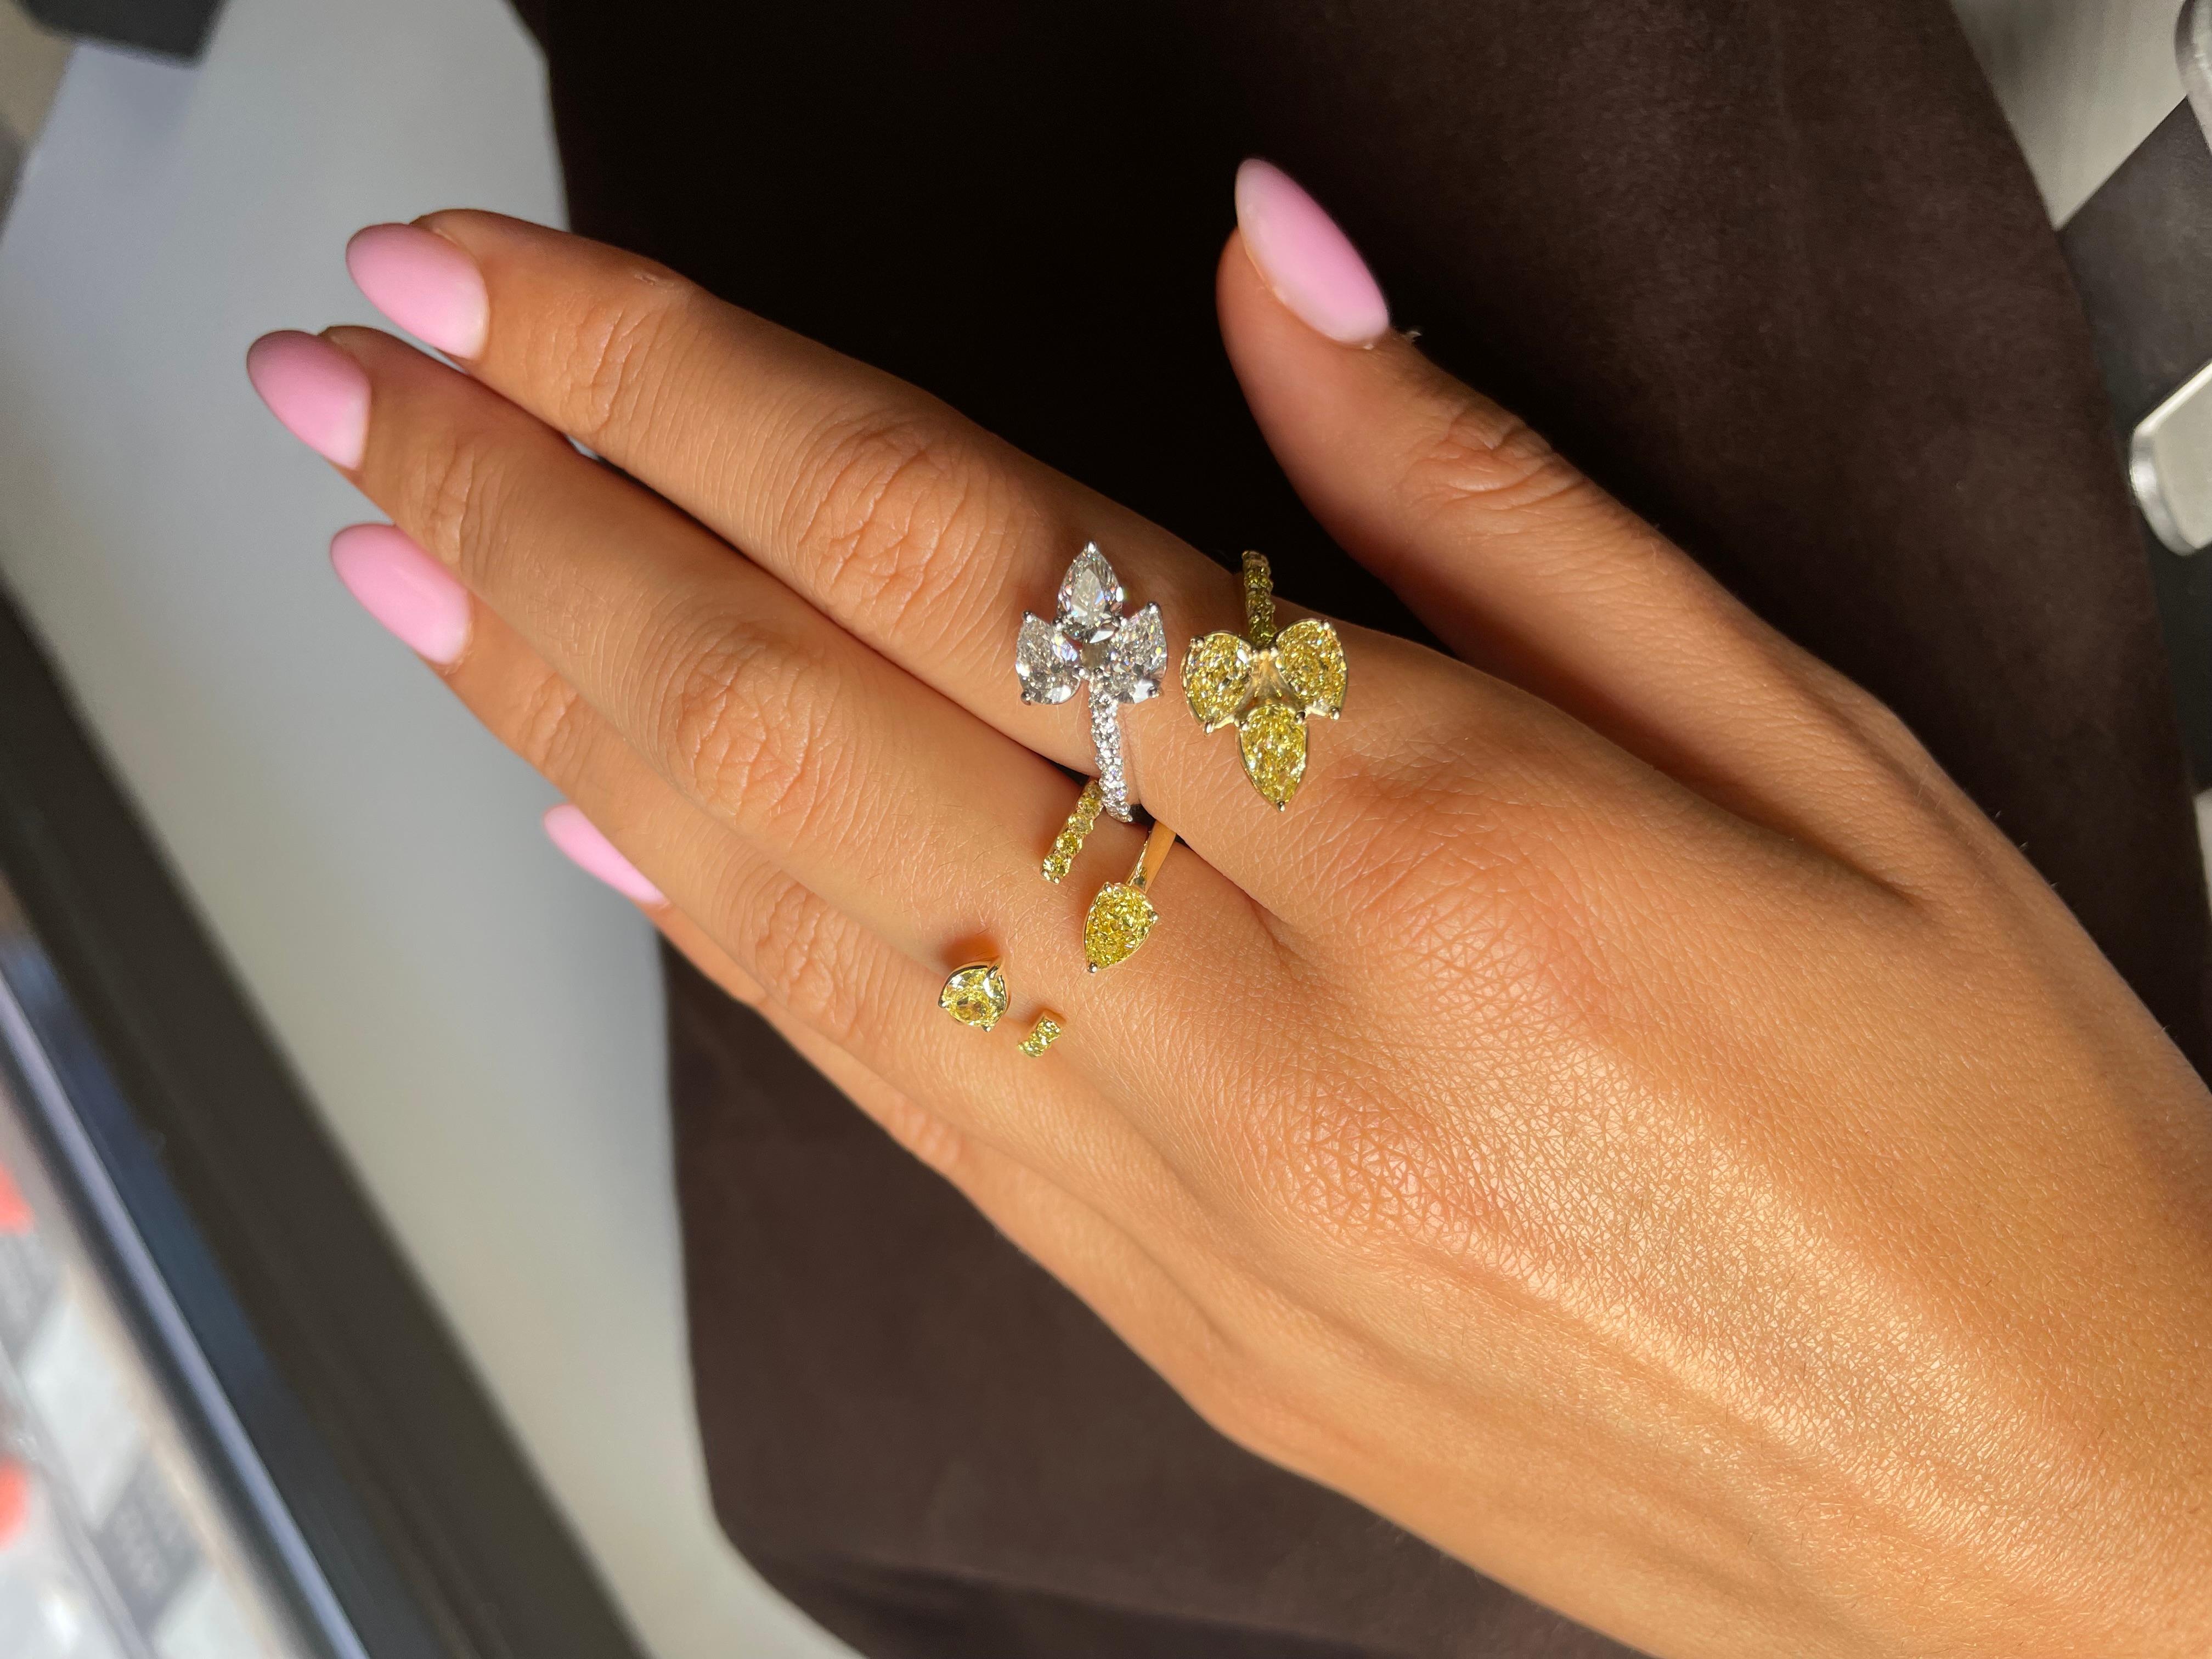 Mit einem einzigartigen Diamond Leaf Bypass Ring.  die ein einzigartiges Design präsentieren. Verziert mit 3 birnenförmigen gelben Diamanten von insgesamt 1,26 Karat und 3 birnenförmigen farblosen Diamanten von insgesamt 1,20 Karat ist dieser Ring